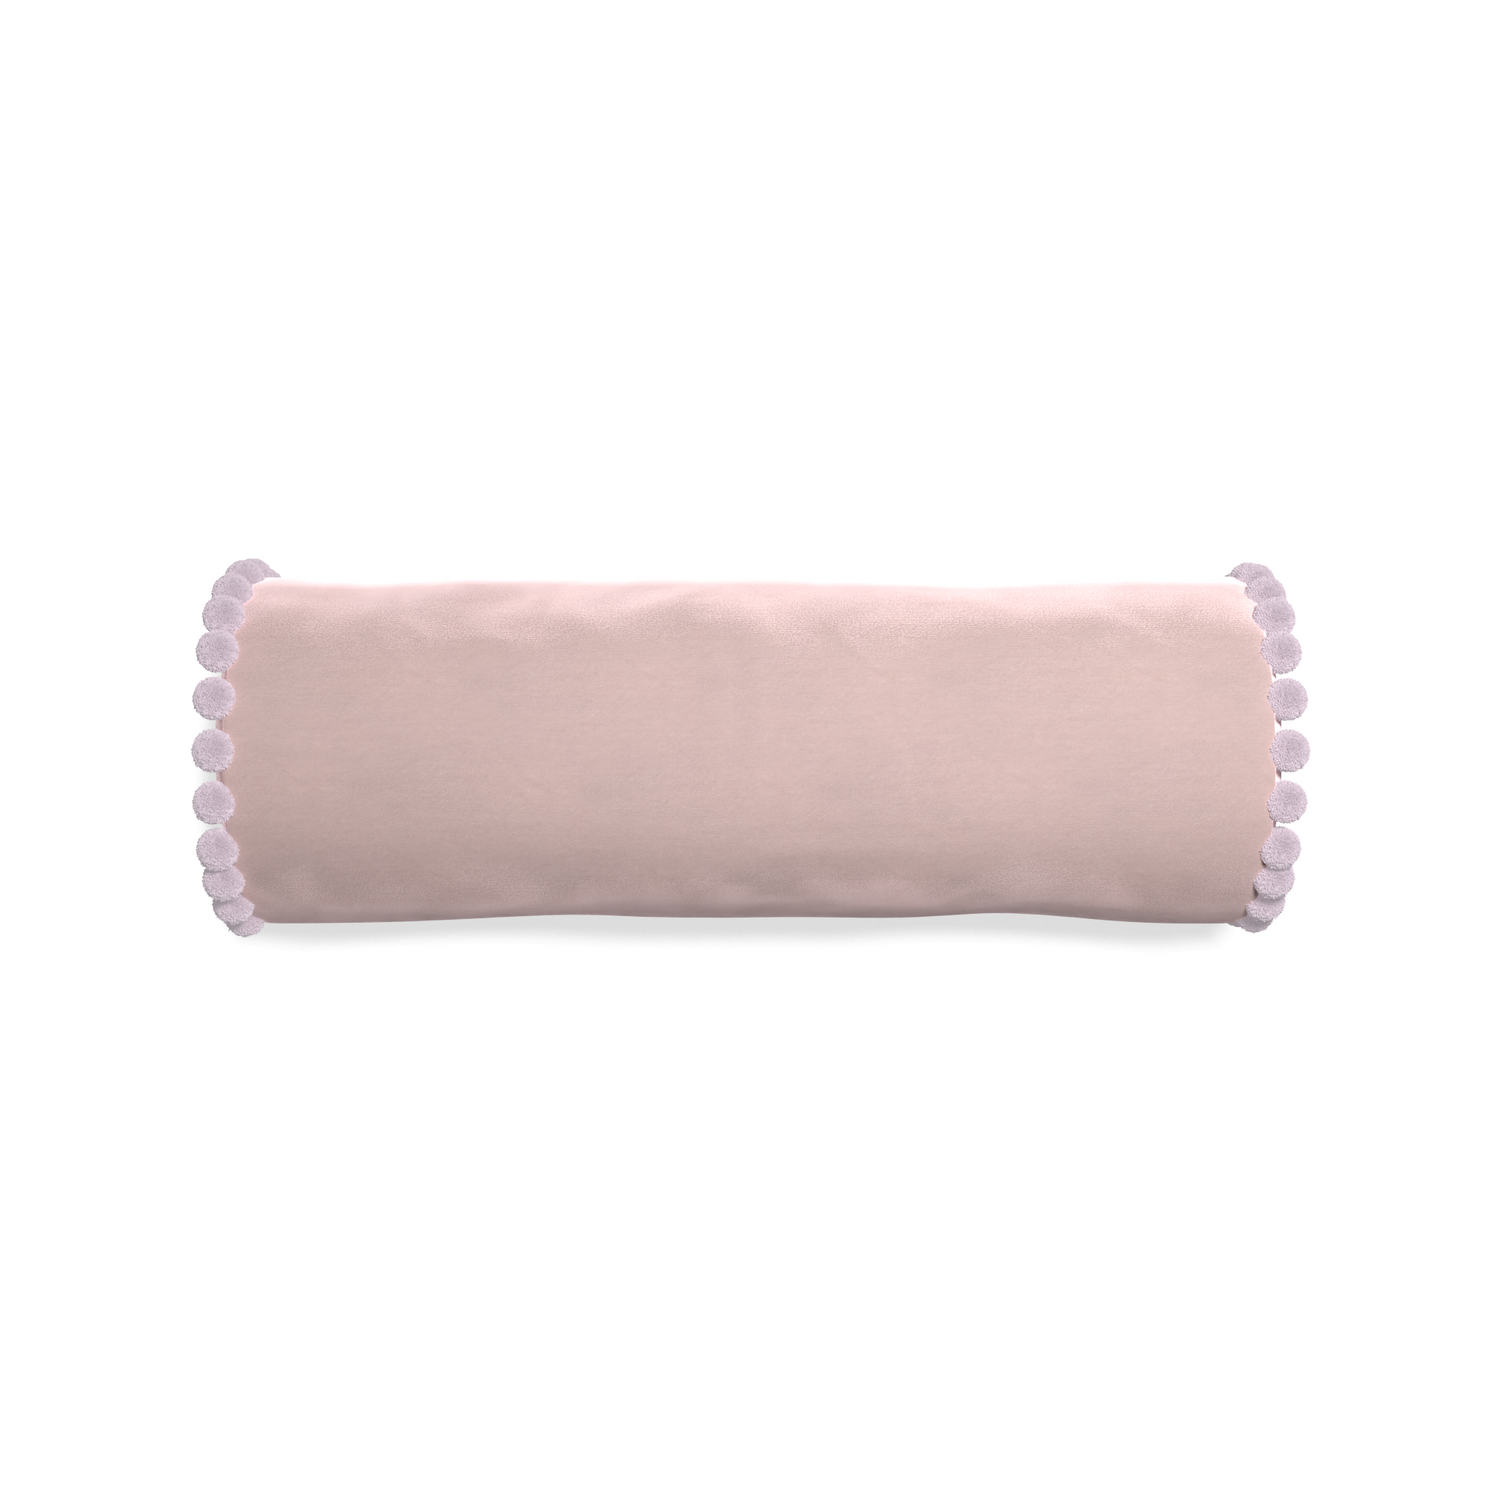 bolster light pink velvet pillow with lilac pom poms